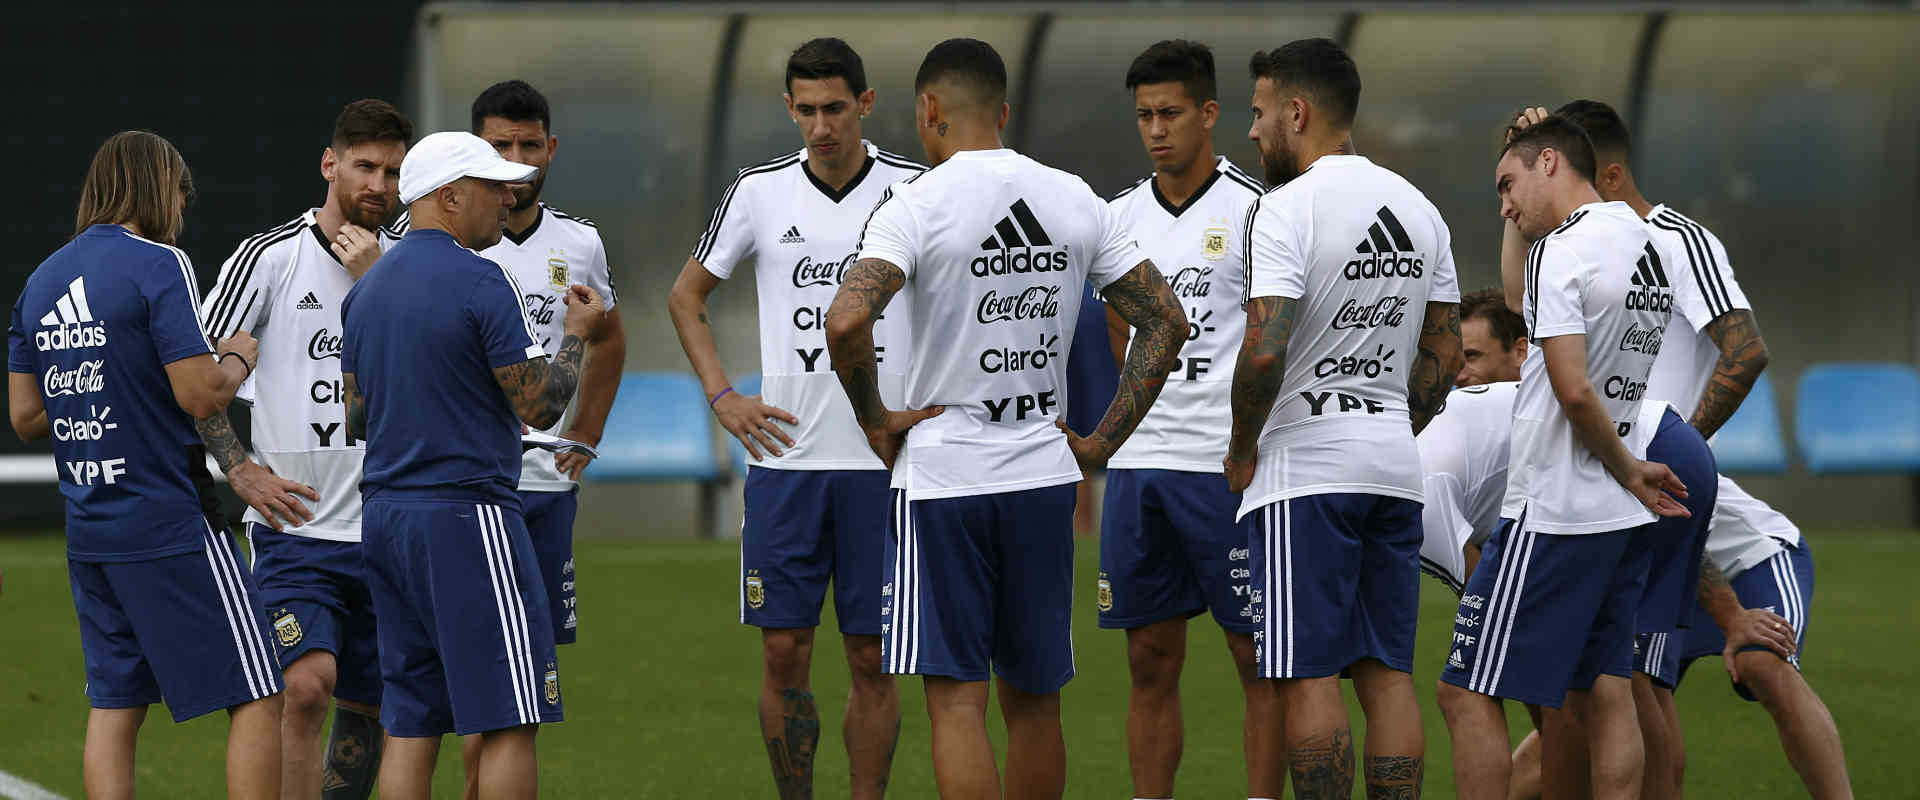 נבחרת ארגנטינה בכדורגל